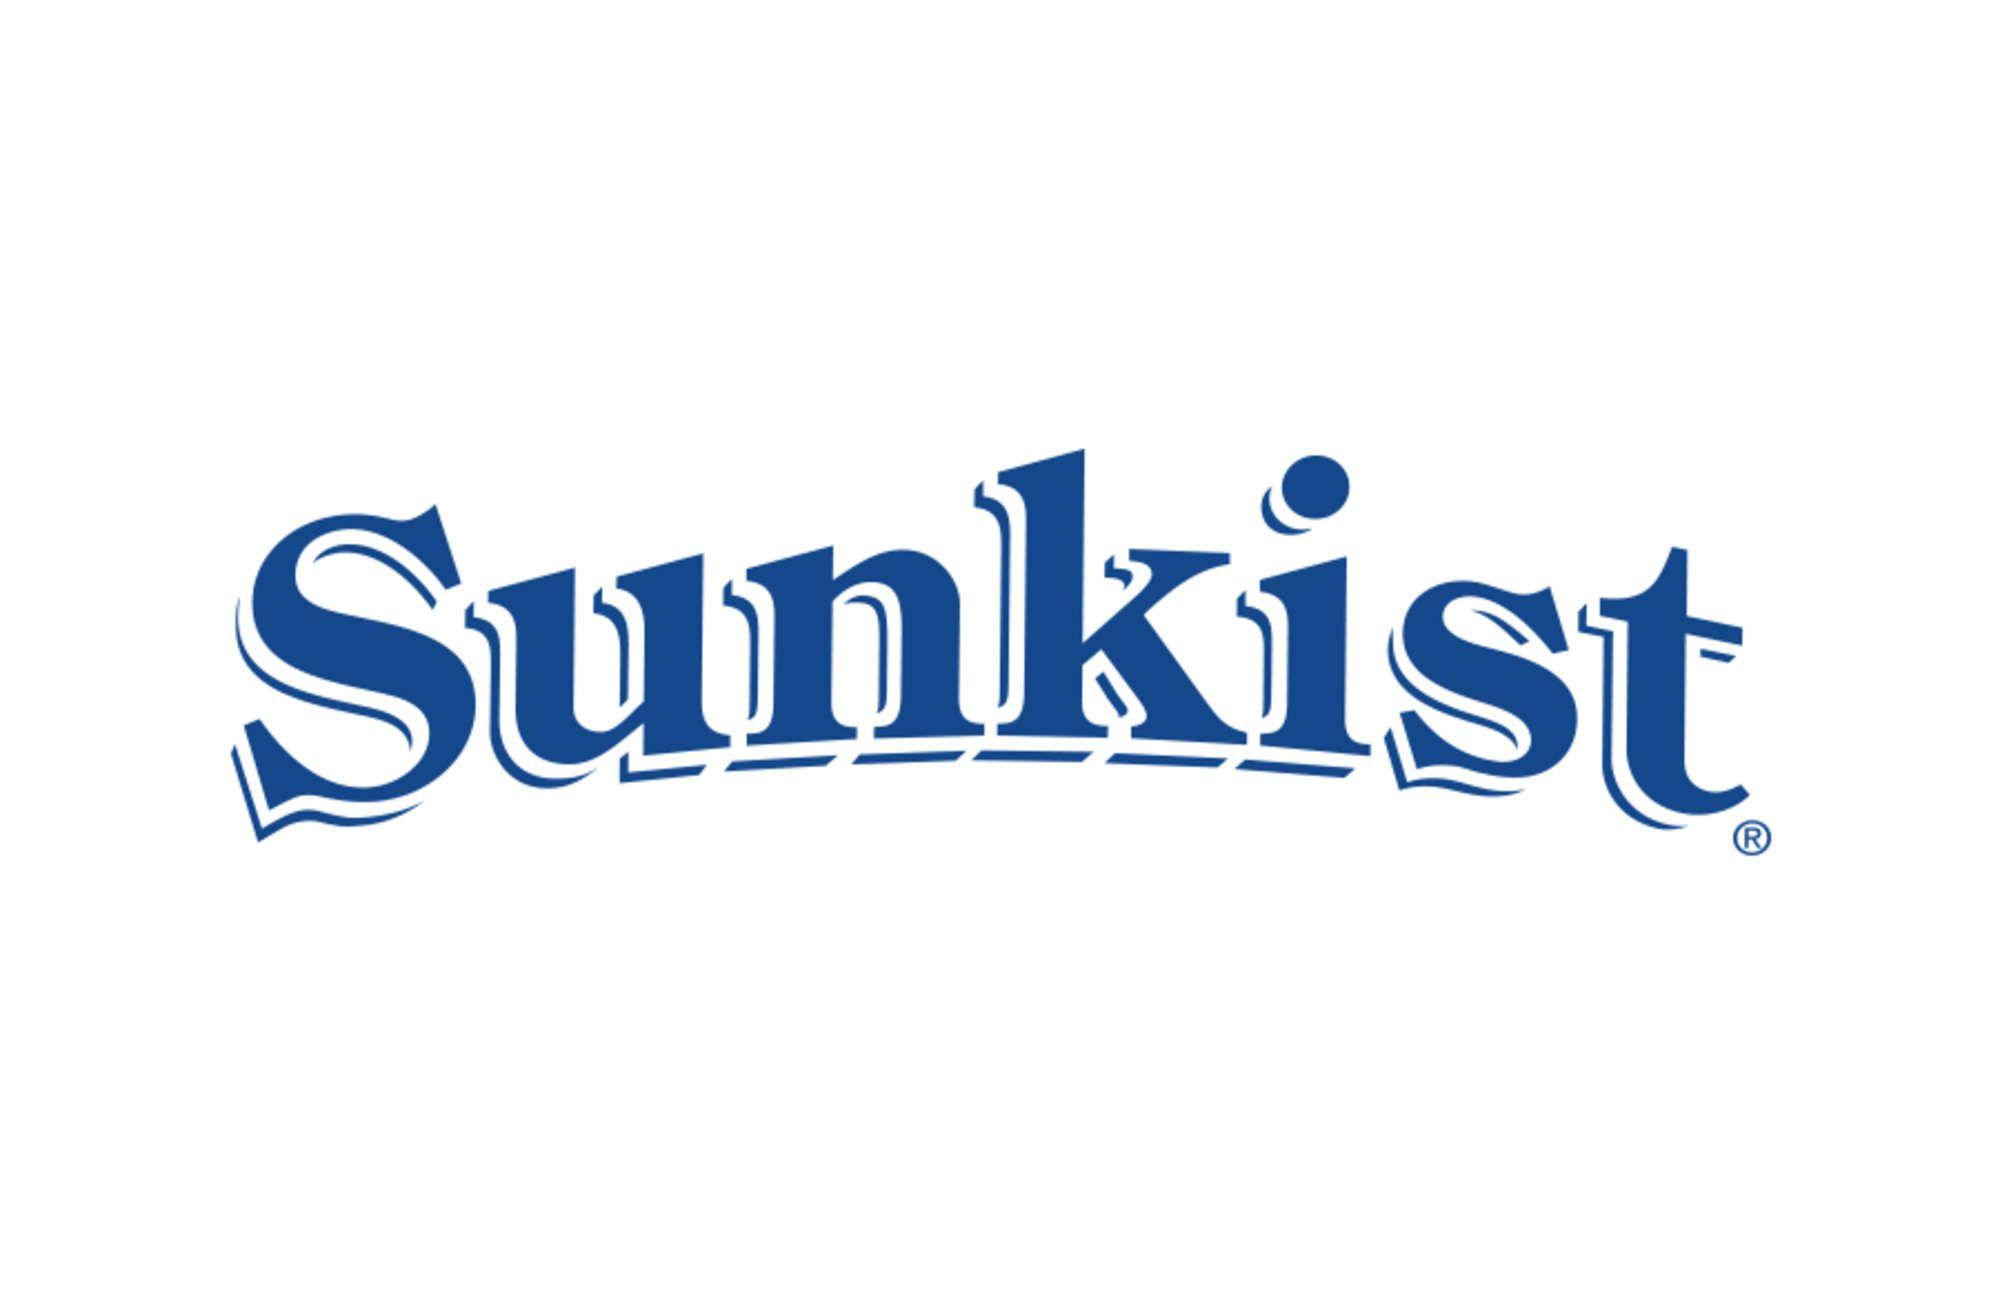 New Sunkist Logo - Sunkist